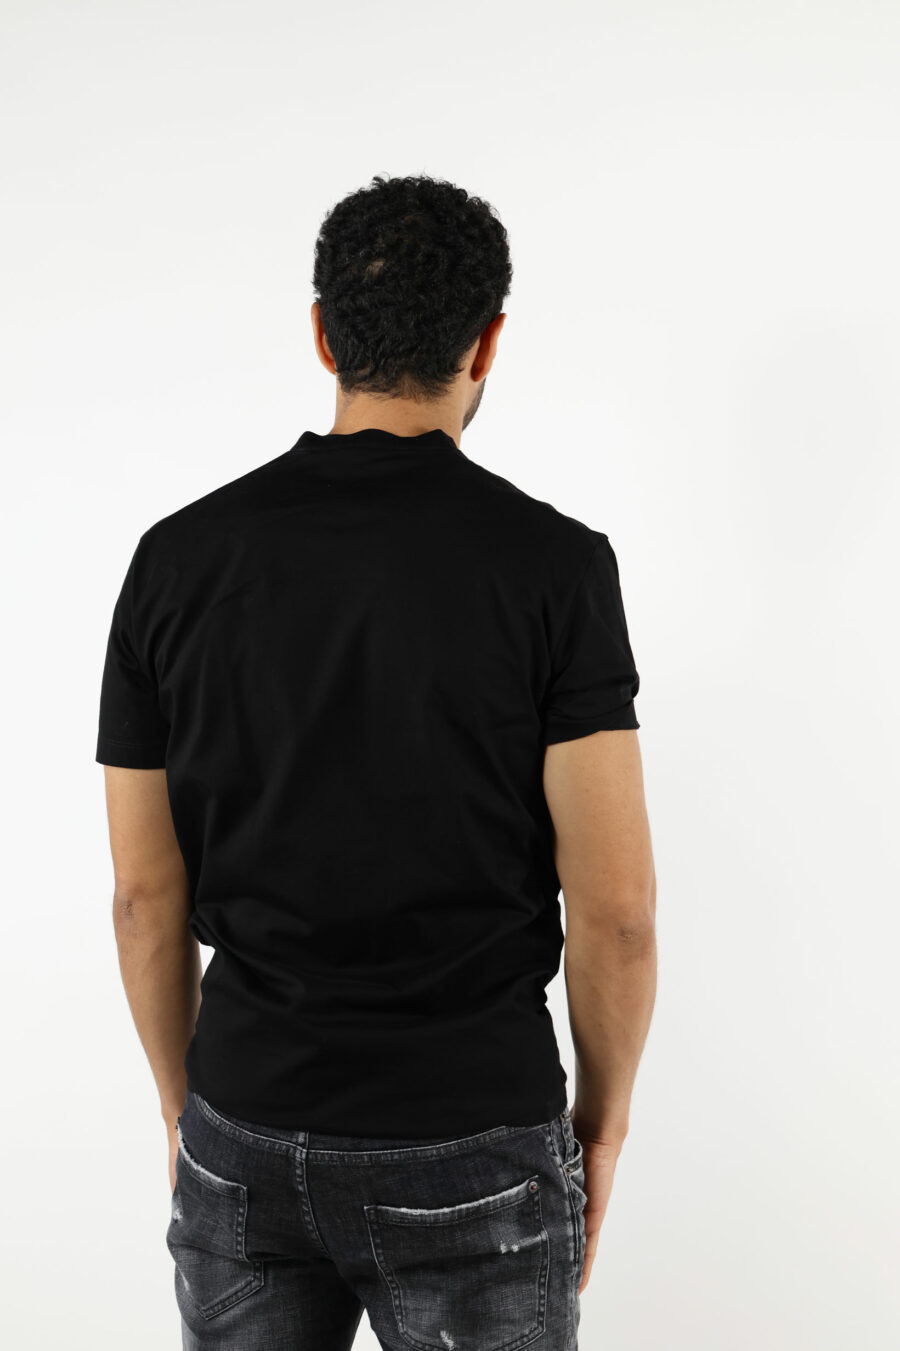 T-shirt preta com maxilogo em relevo preto - 111287